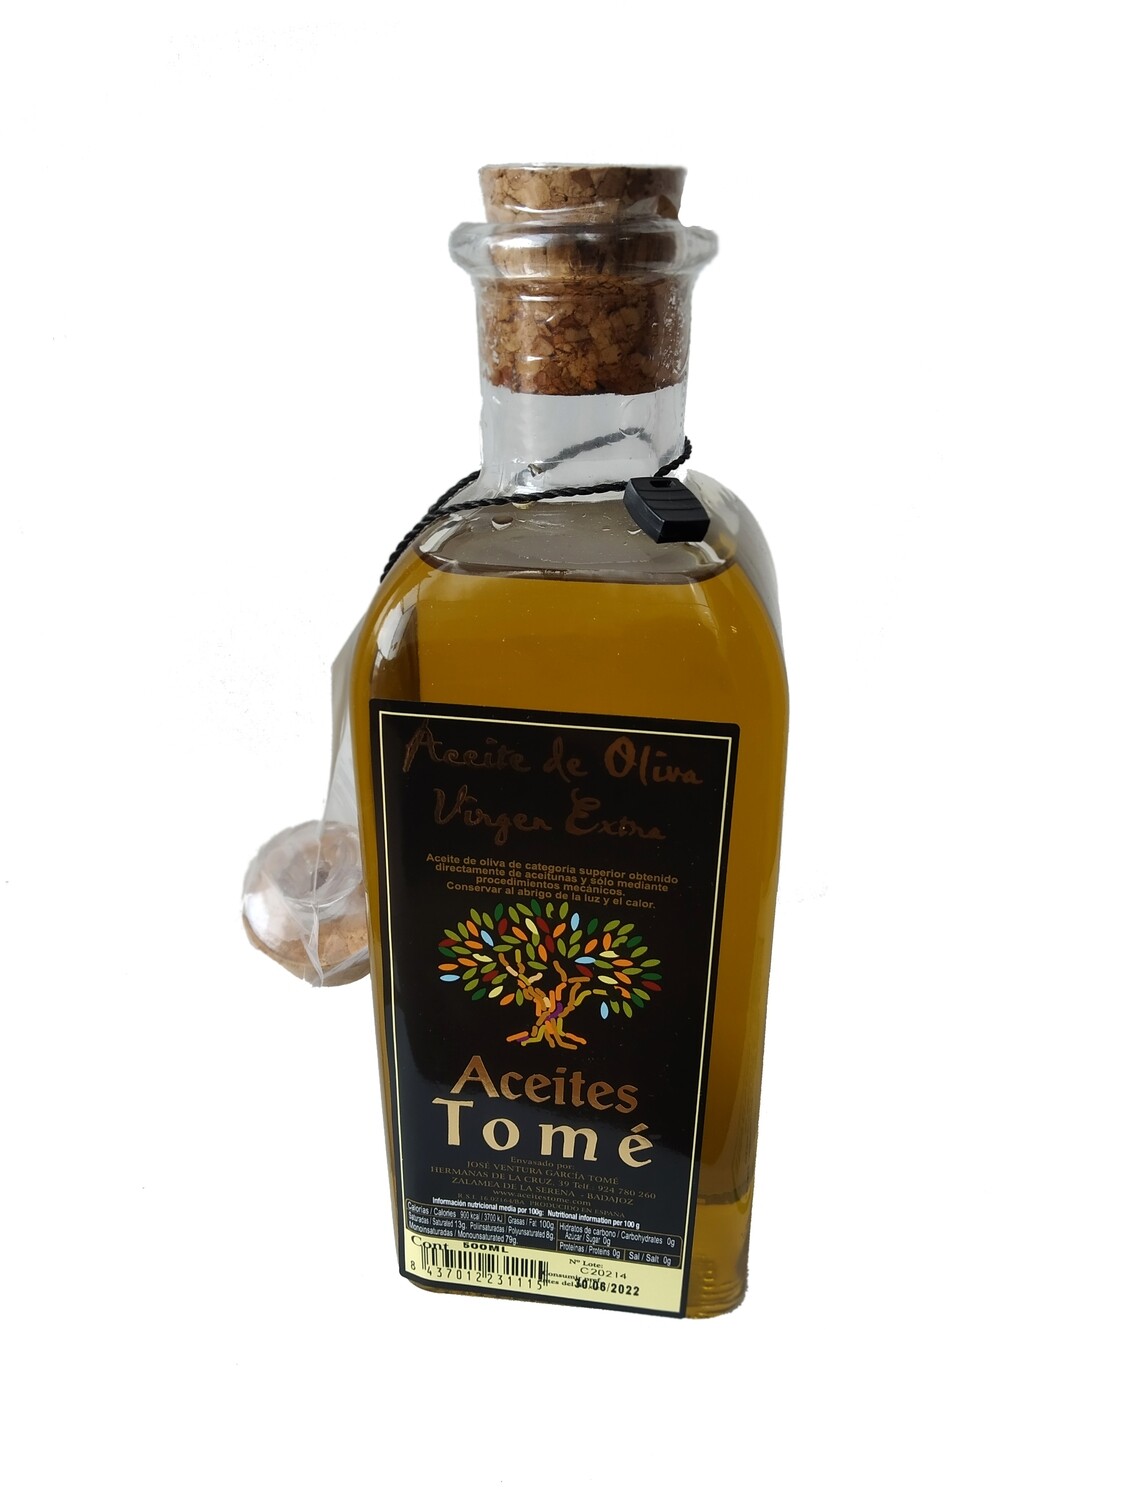 Caja de 12 botellas de 0,5 litros de aceite de oliva virgen extra. Botella rústica con vertedor